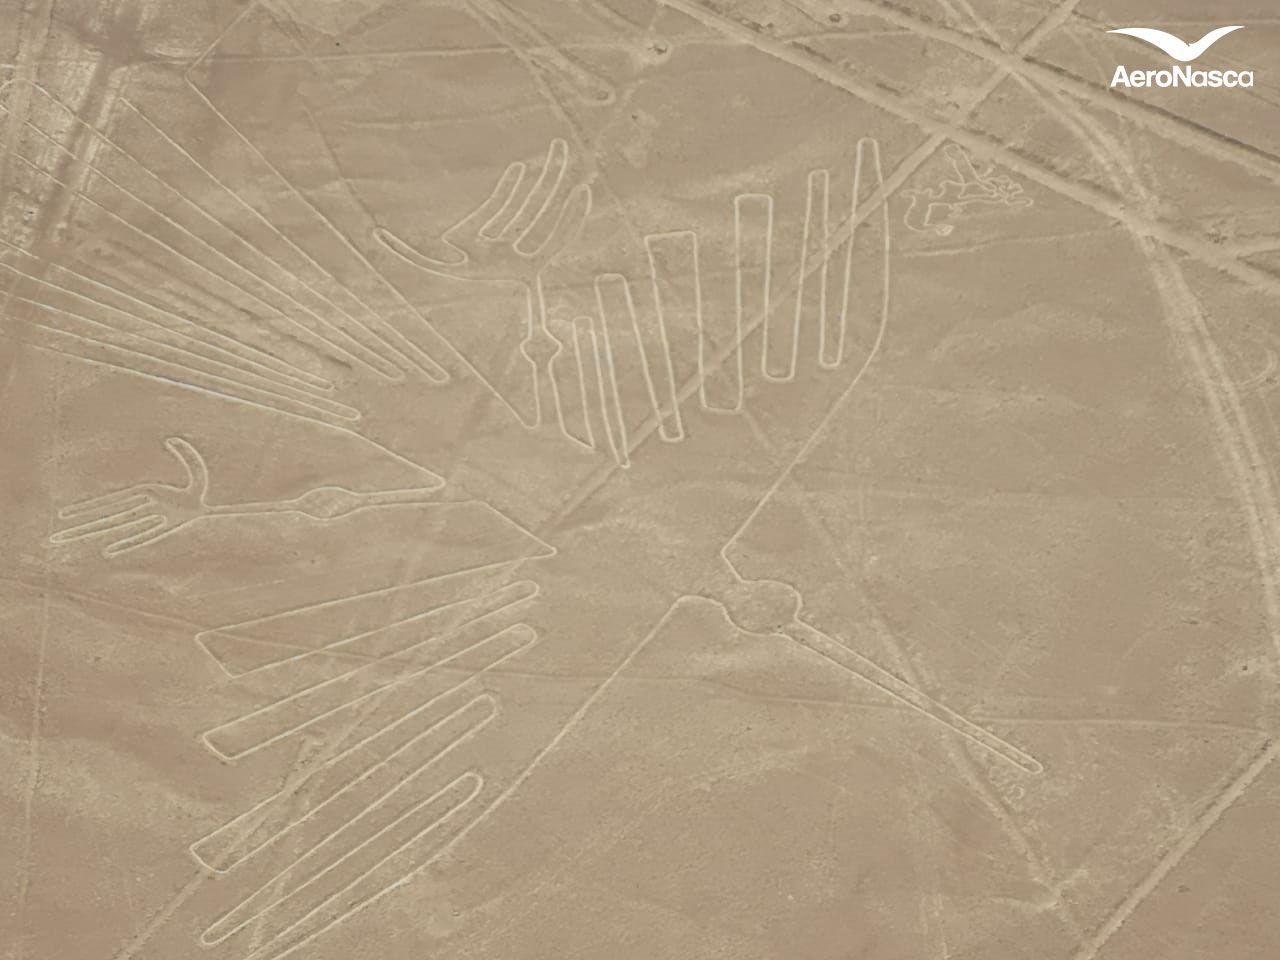 Imagenes de las Lineas de Nazca: Condor